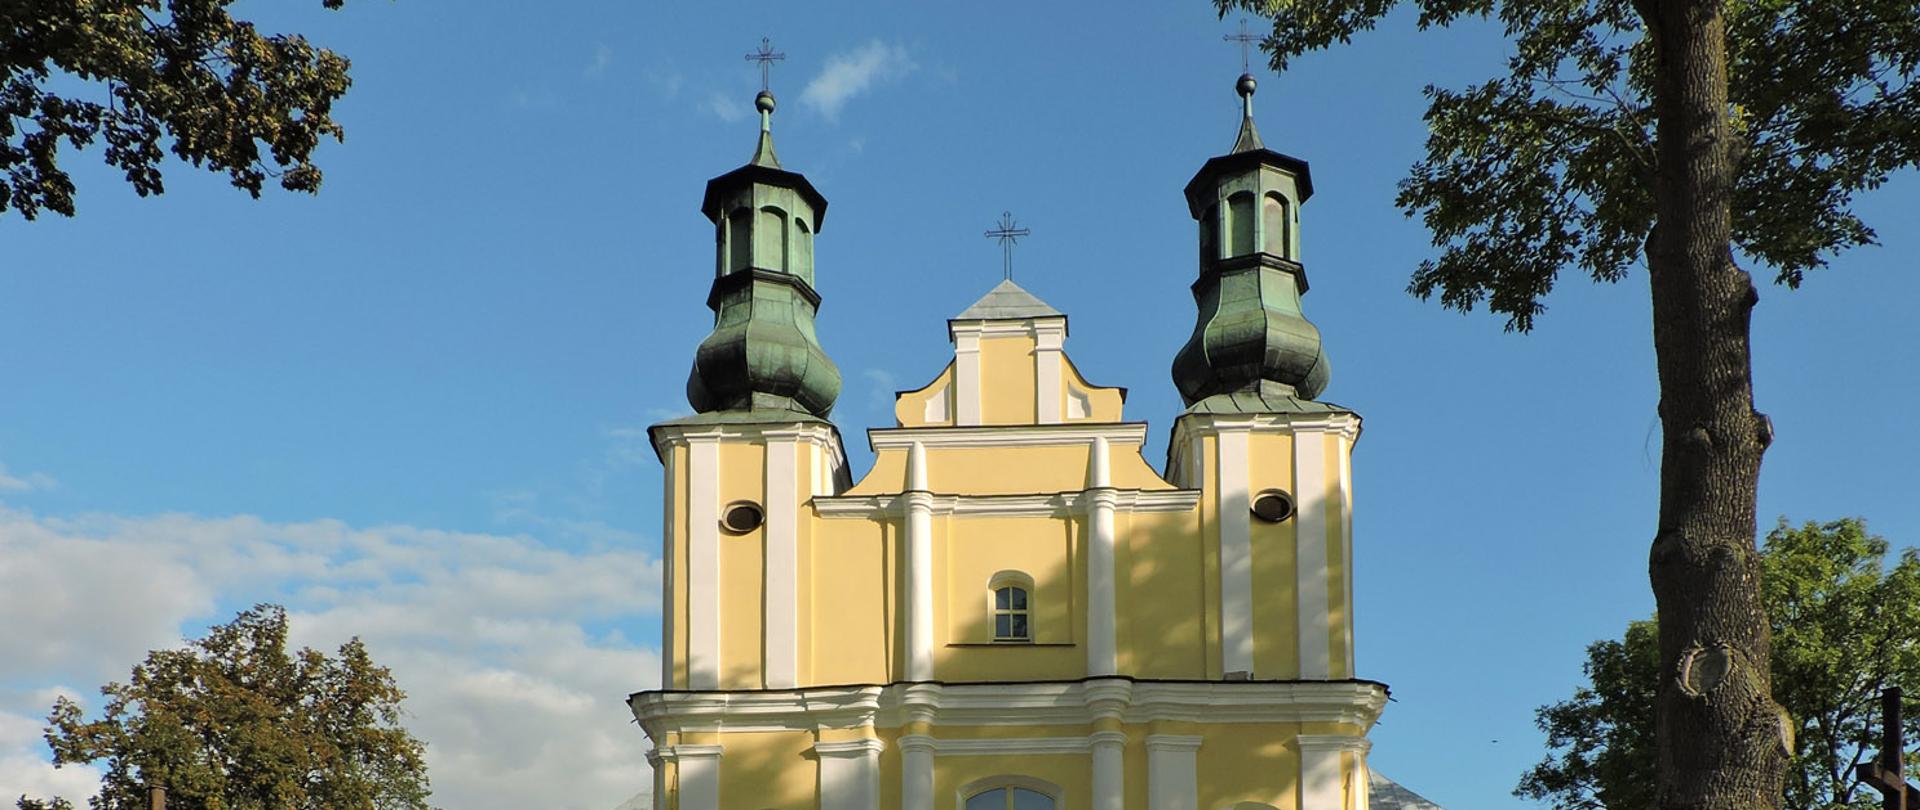 Zdjęcie przedstawia Kościół Świętego Jana Chrzciciela w Górznie. Jednonawowa budowla reprezentuje styl barokowy, jest orientowana, murowana, wzniesiona z cegły. Fasada jest ujęta z lewej i prawej strony dwiema czworobocznymi wieżami. Budynek jest żółto-biały. Wokół rosną drzewa.